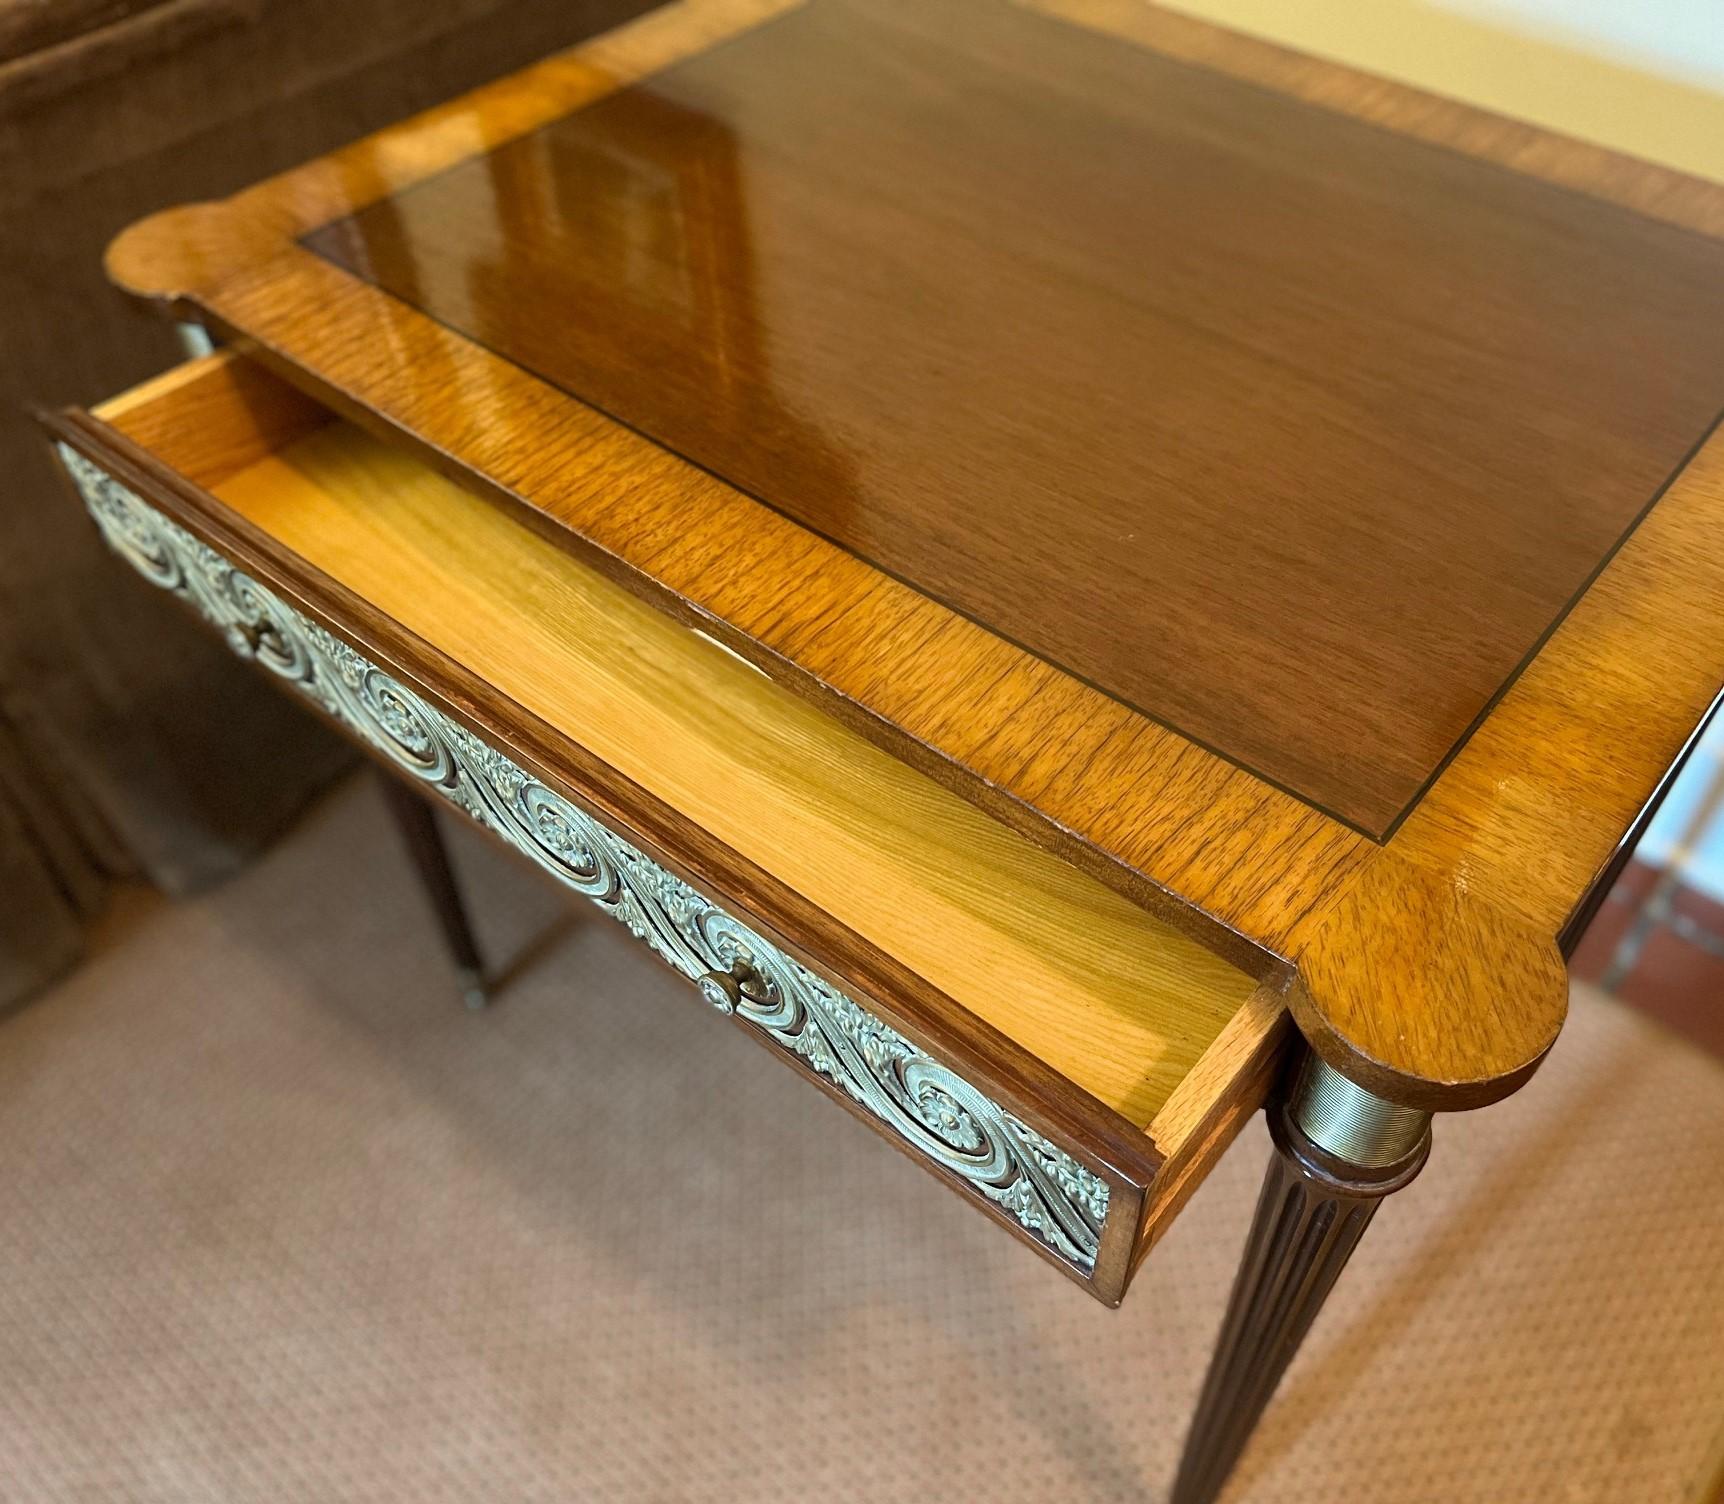 Fin C.I.C. Table d'appoint en bronze doré ornée de pieds tournés cannelés et d'un seul tiroir. Il y a de petites extensions latérales (10